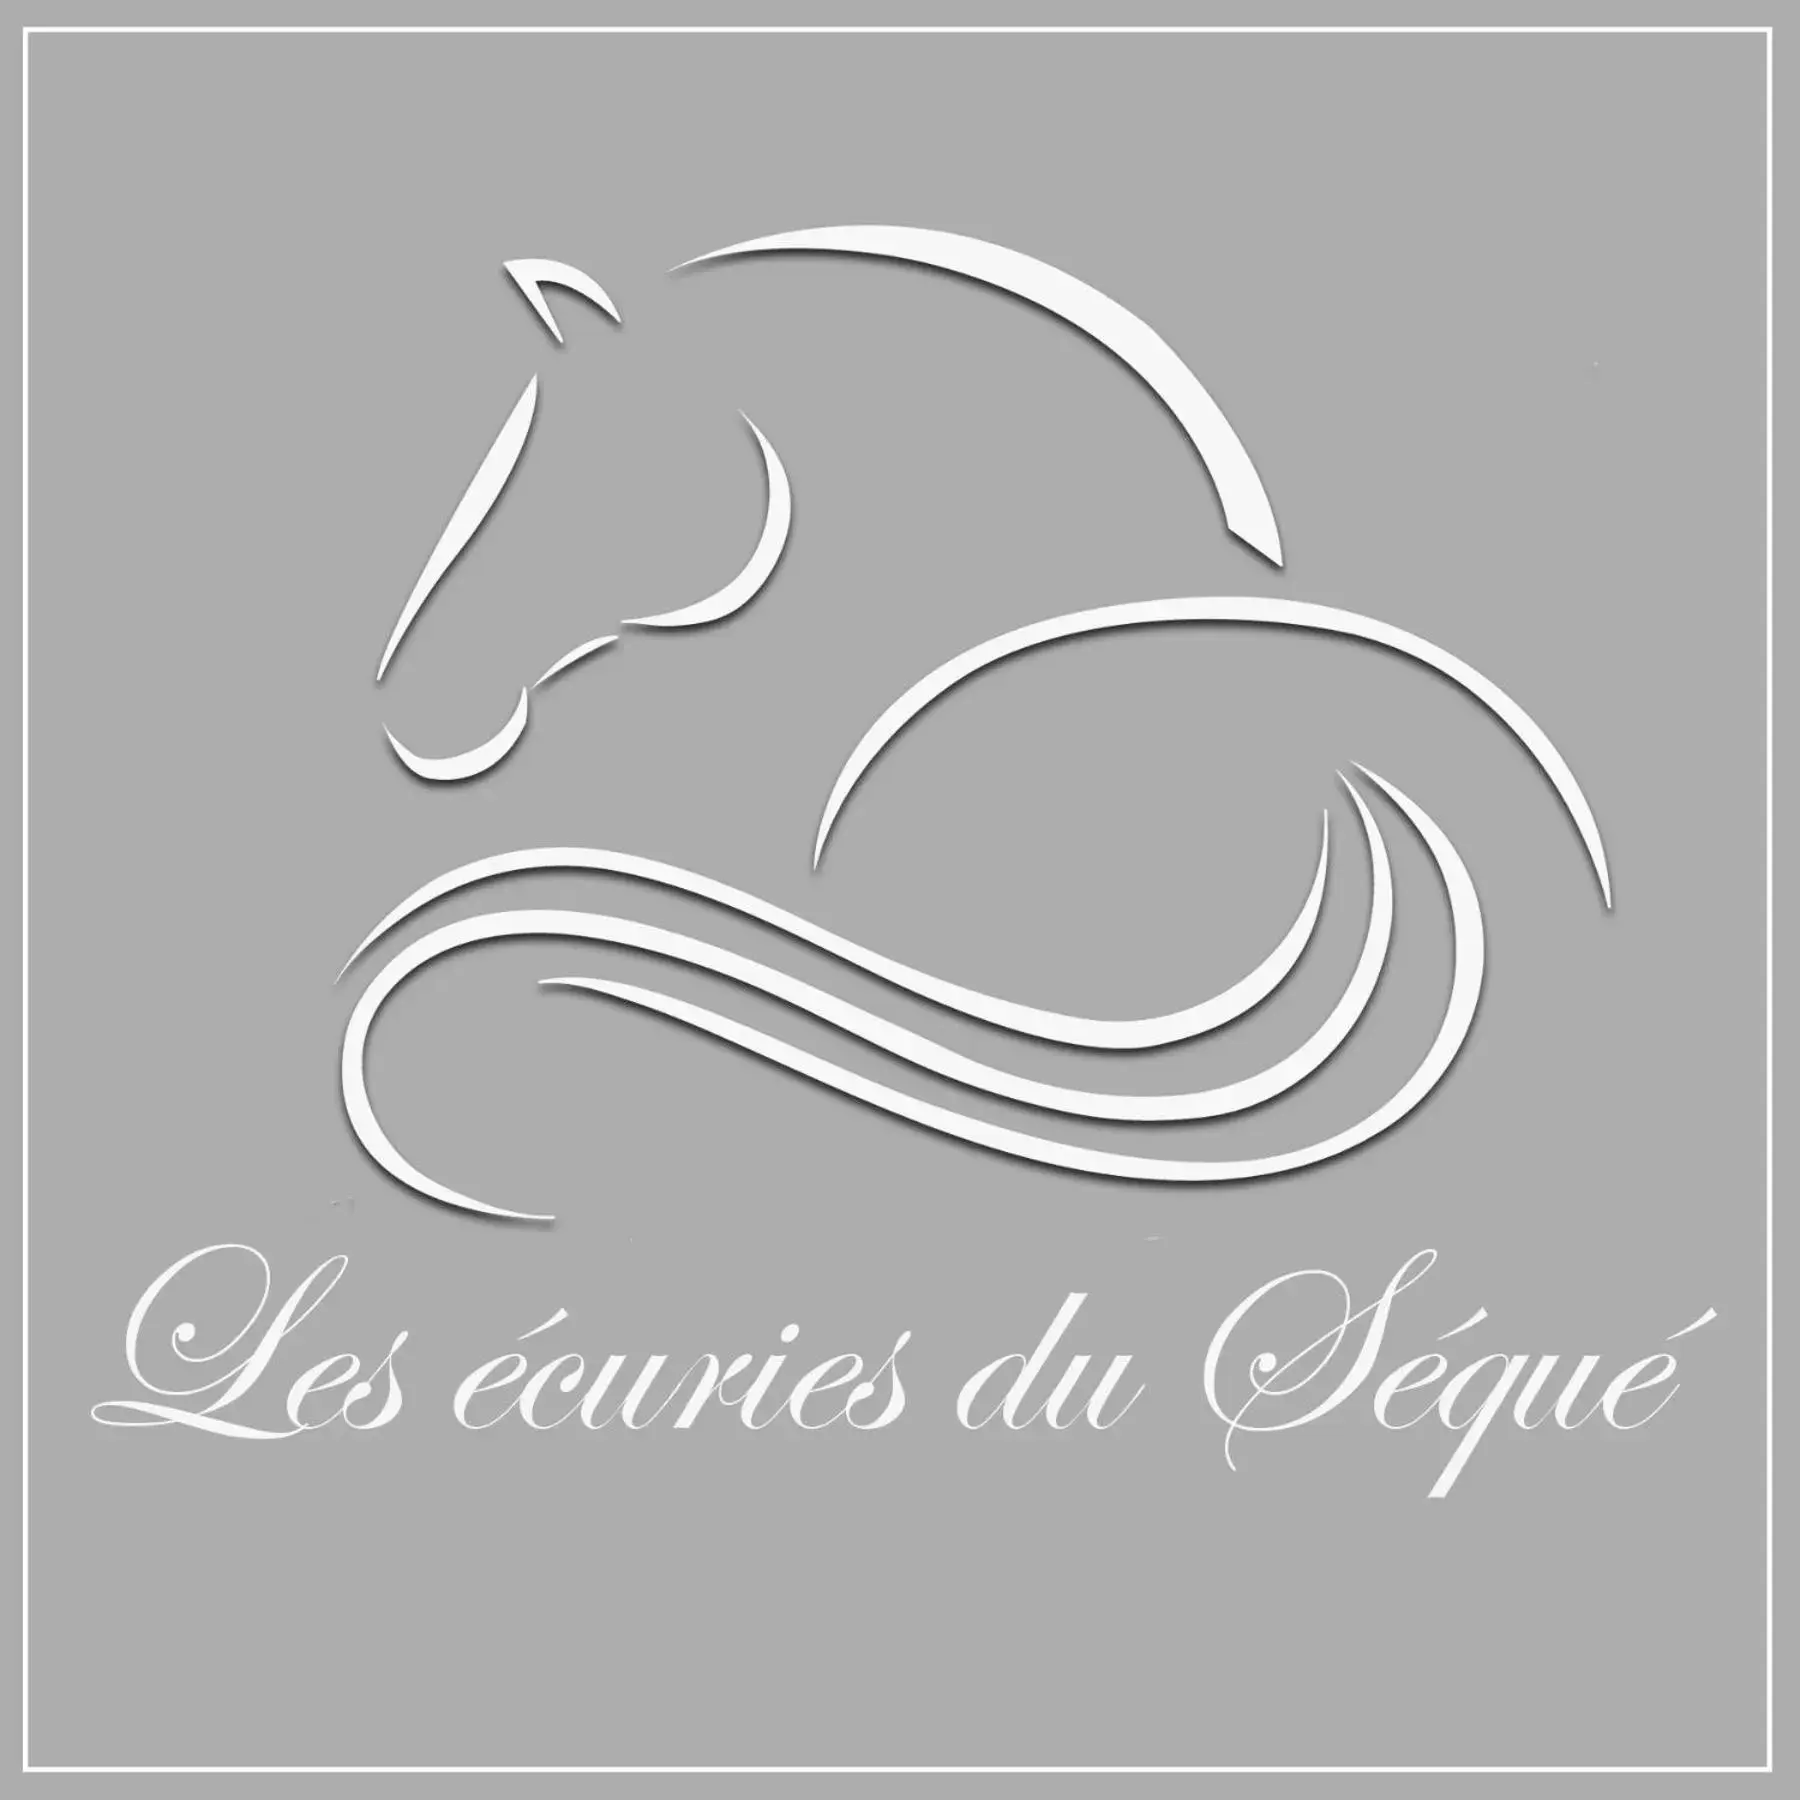 Property logo or sign, Property Logo/Sign in Les Ecuries du SEQUE